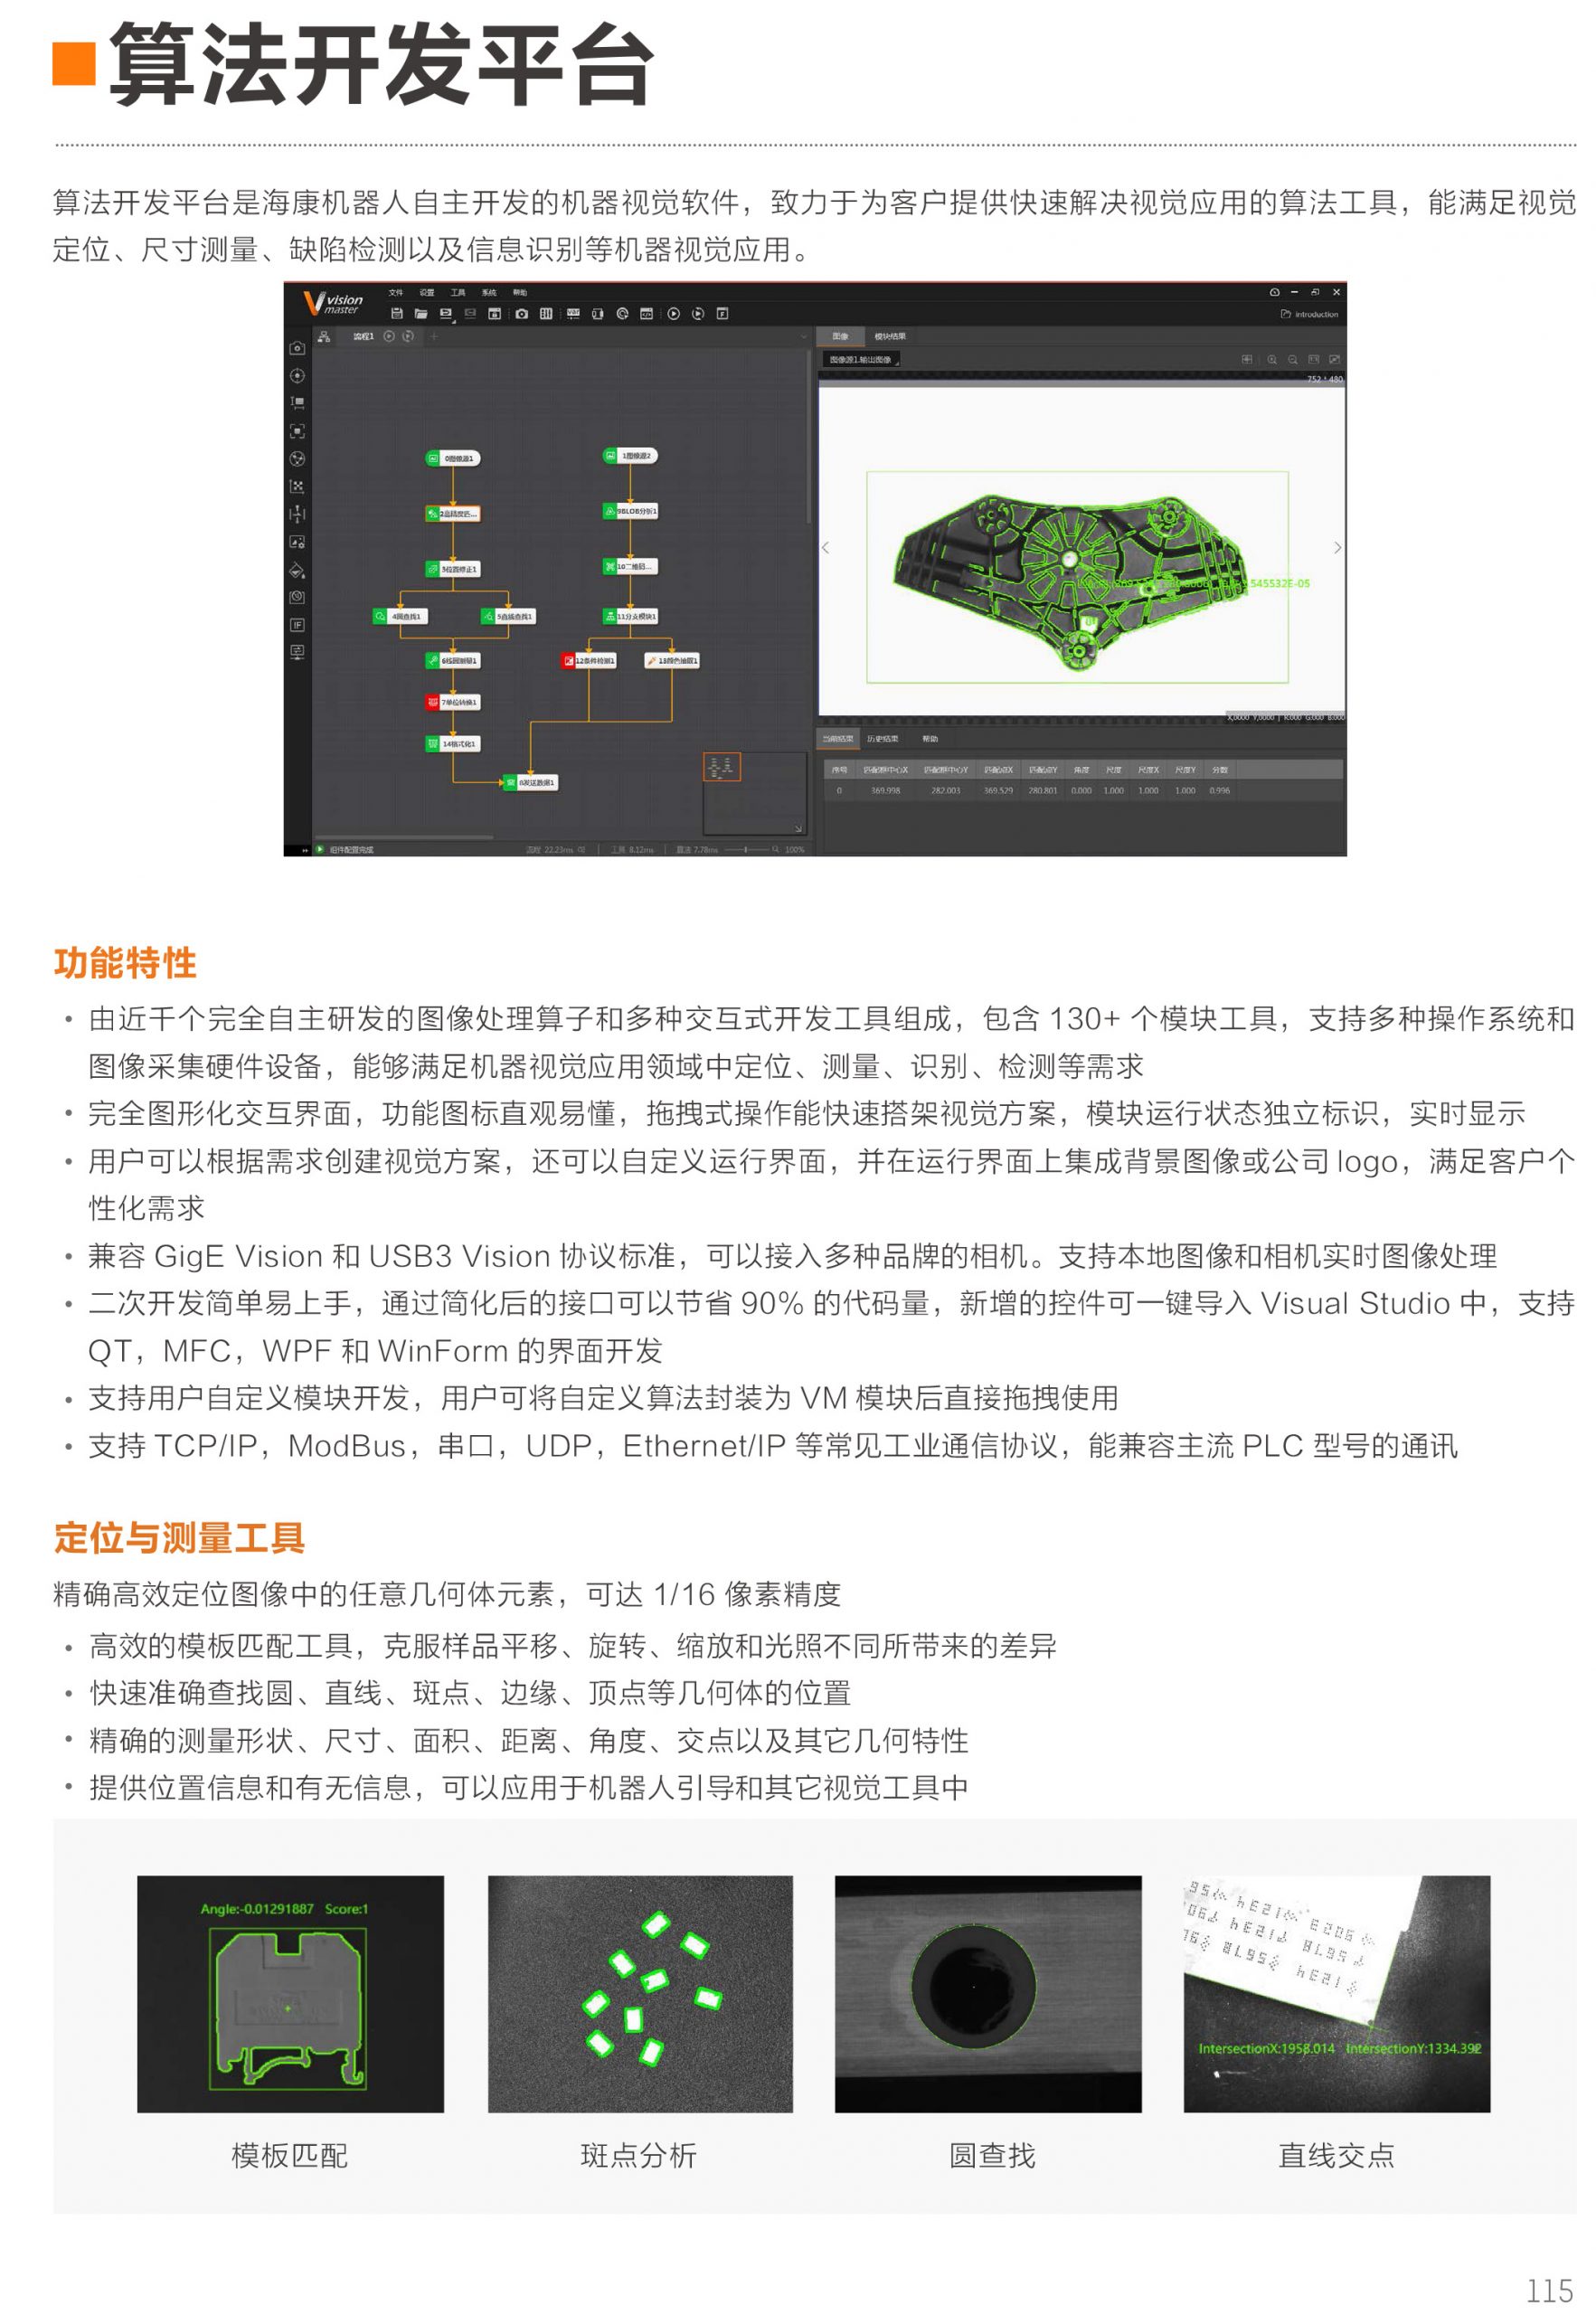 海康威视iMVS-VM-6100PRO 机器视觉平台算法平台加密狗海康算法平台VisionMaster-捷利得(北京)自动化科技有限公司